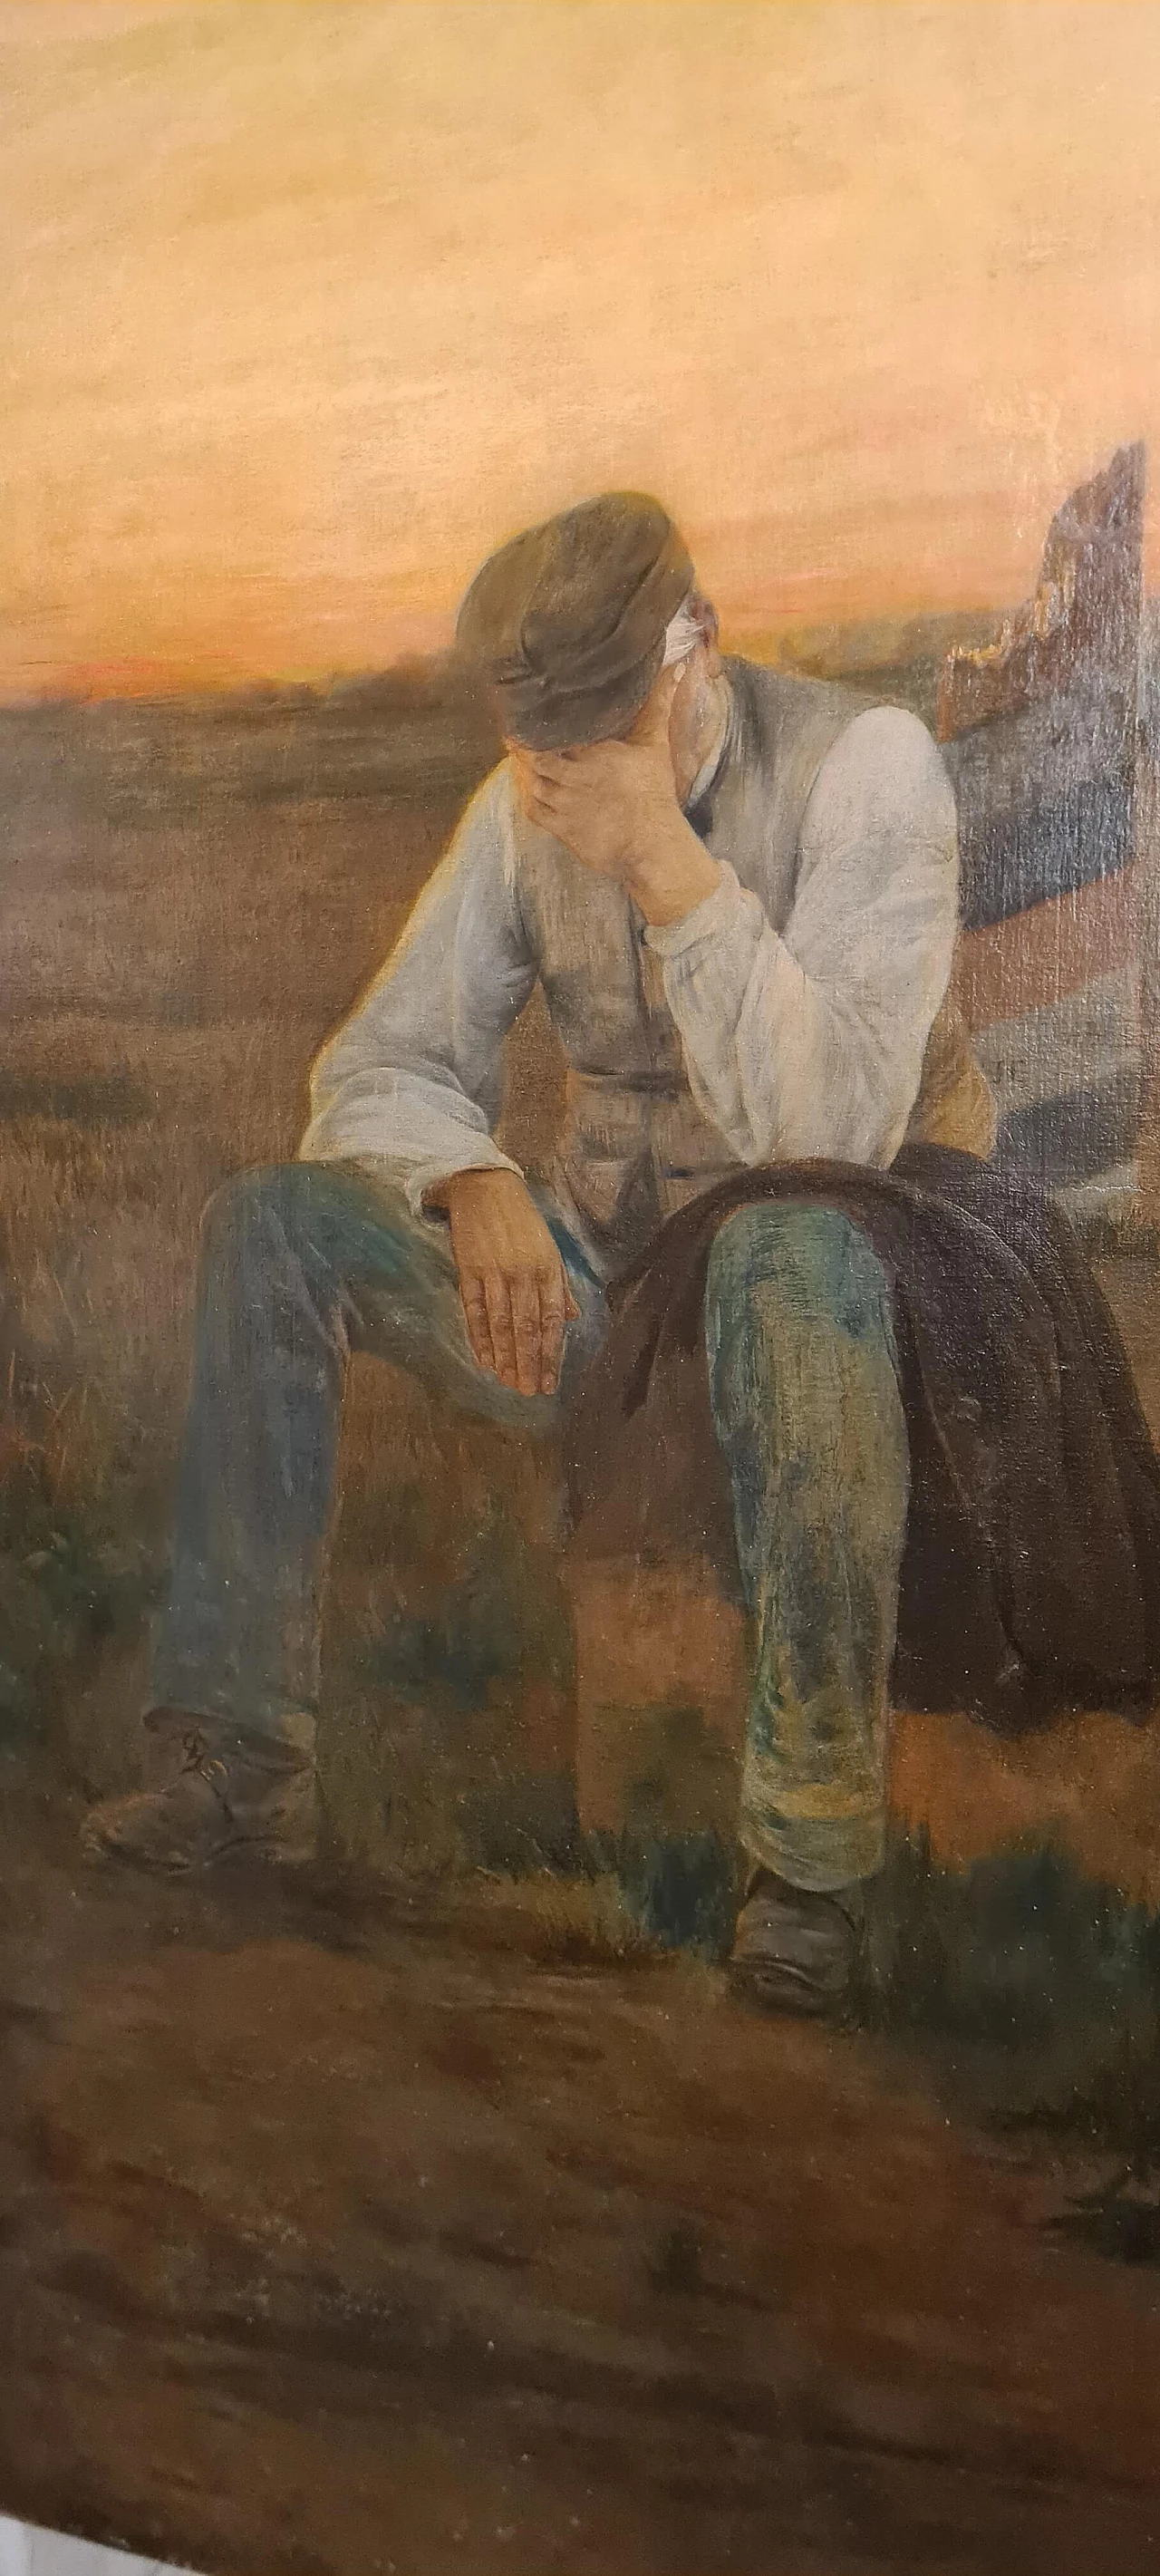 Albert Bettanier, La Depart, oil on canvas, 1888 2